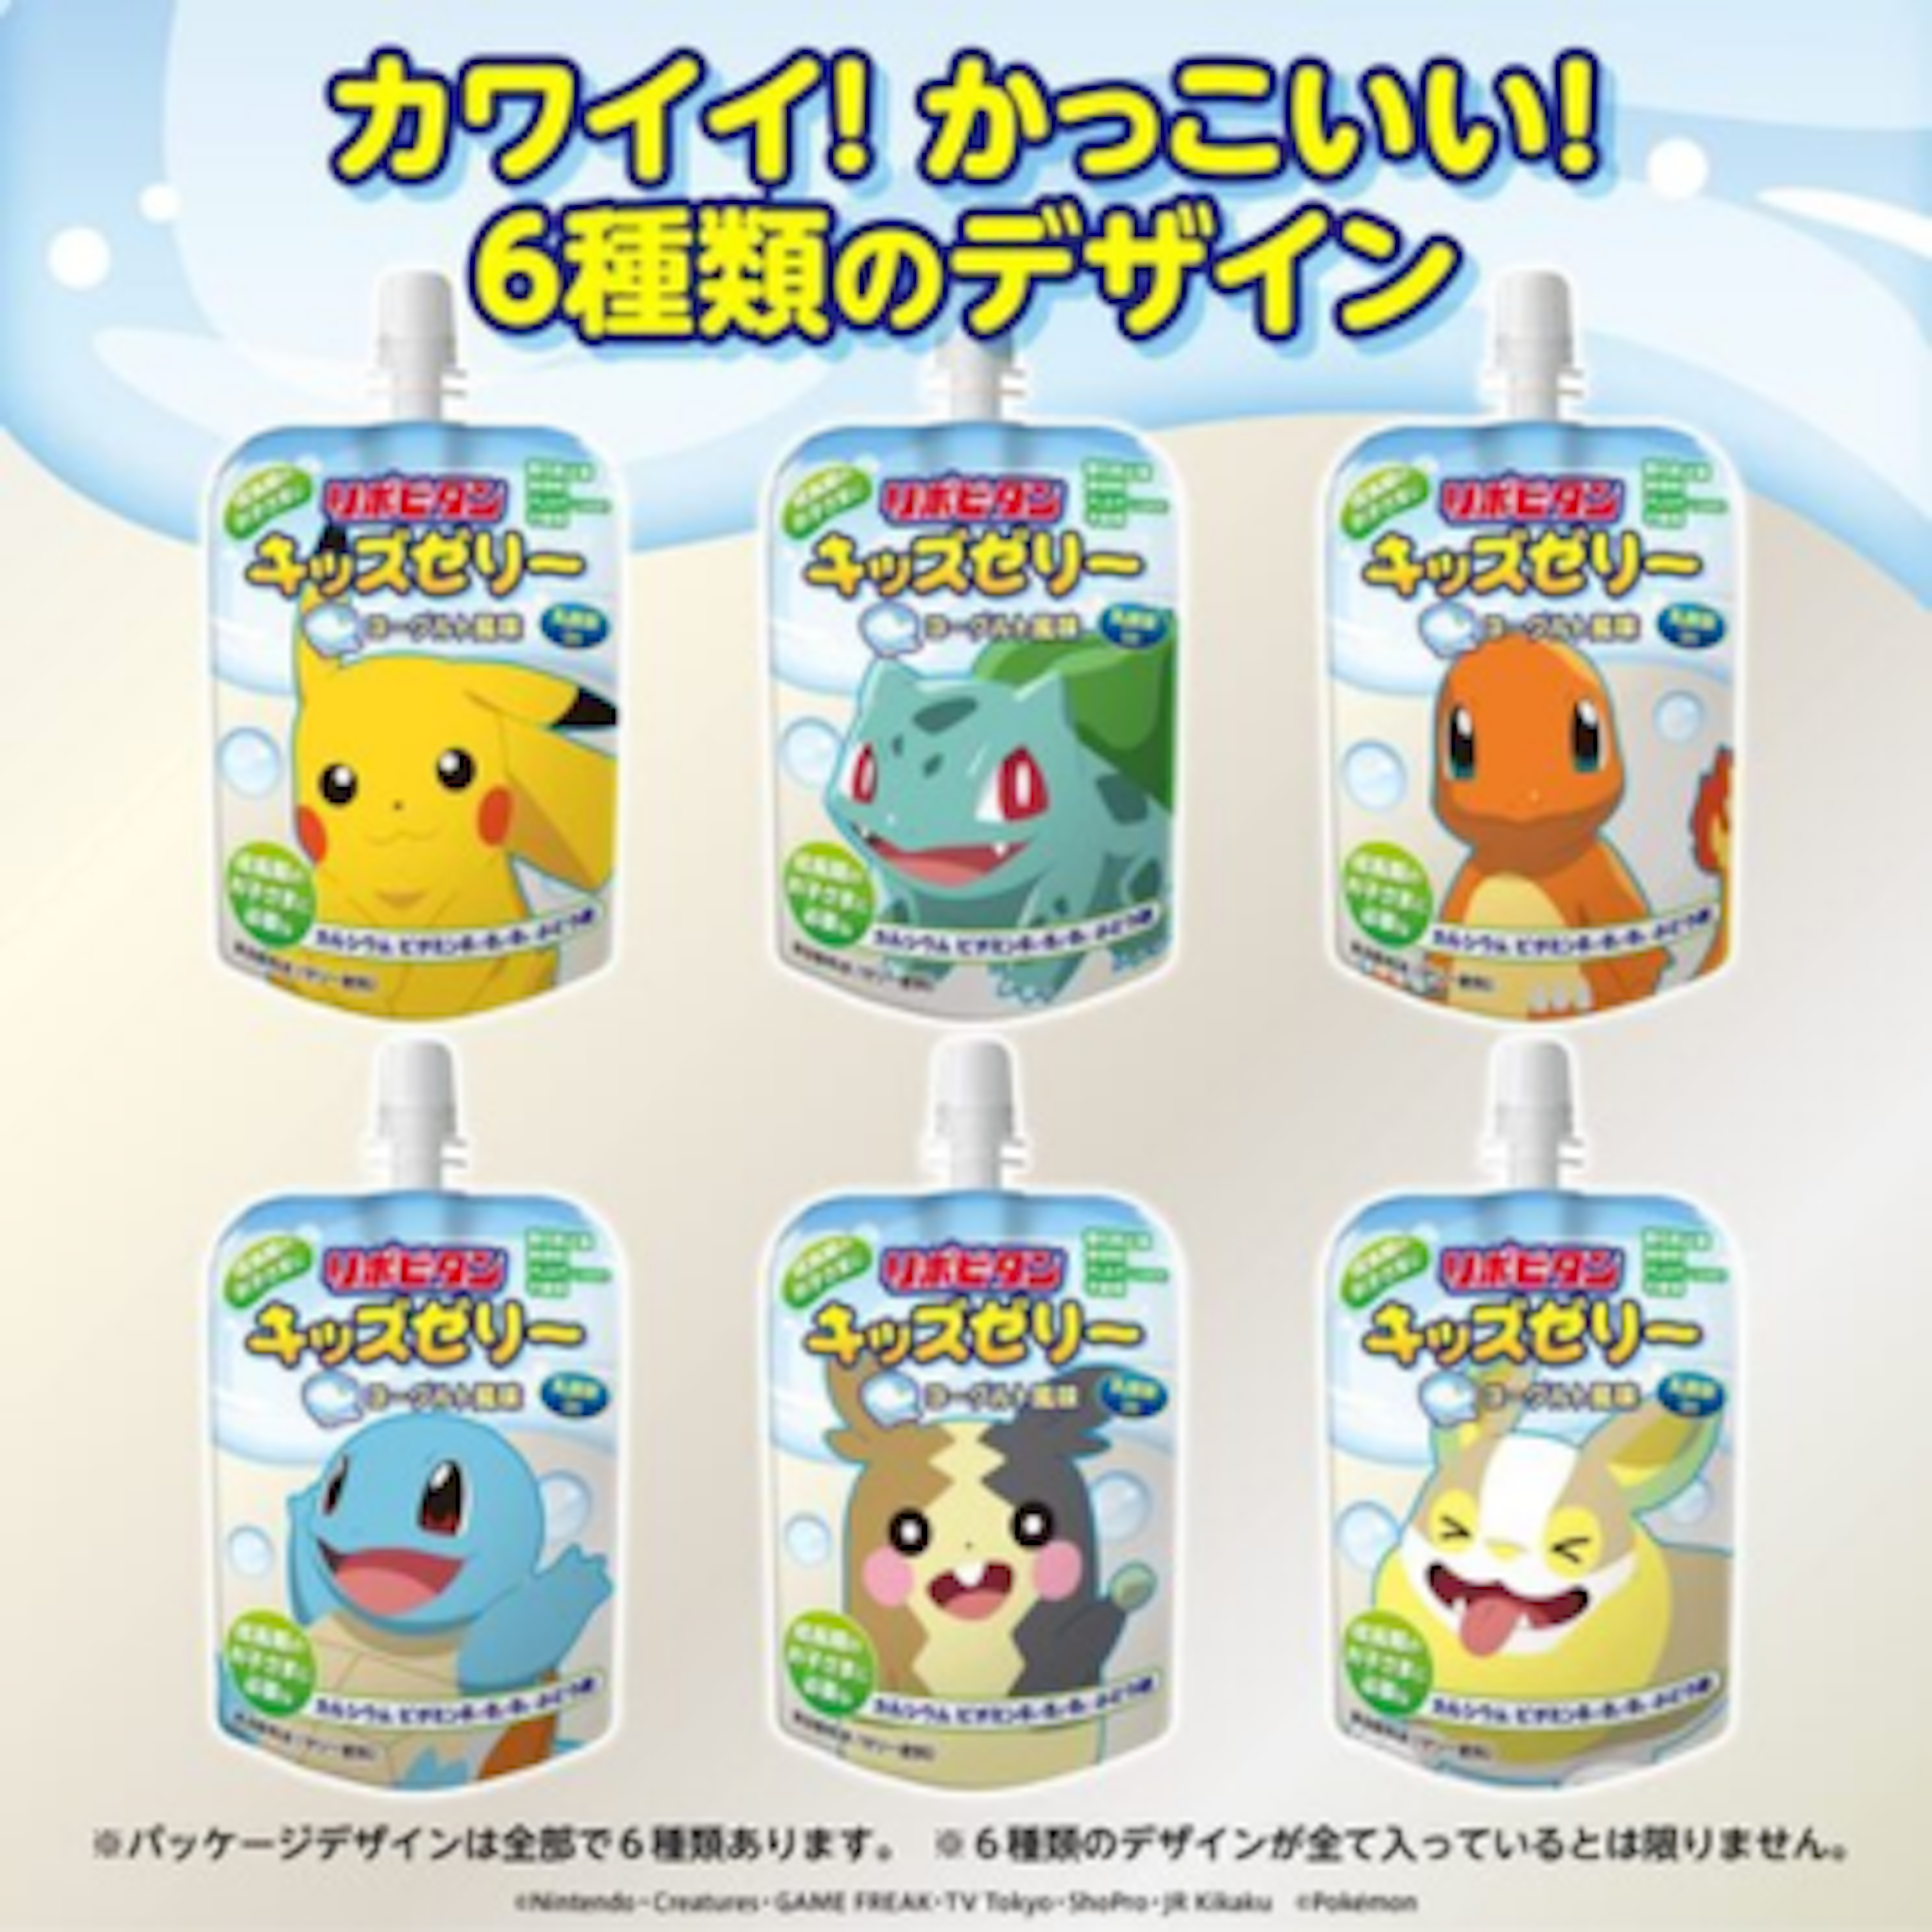 Erfrischender Jelly-Drink mit Joghurtgeschmack und witzigen Pokémon-Charakteren – perfekt für Kinder!